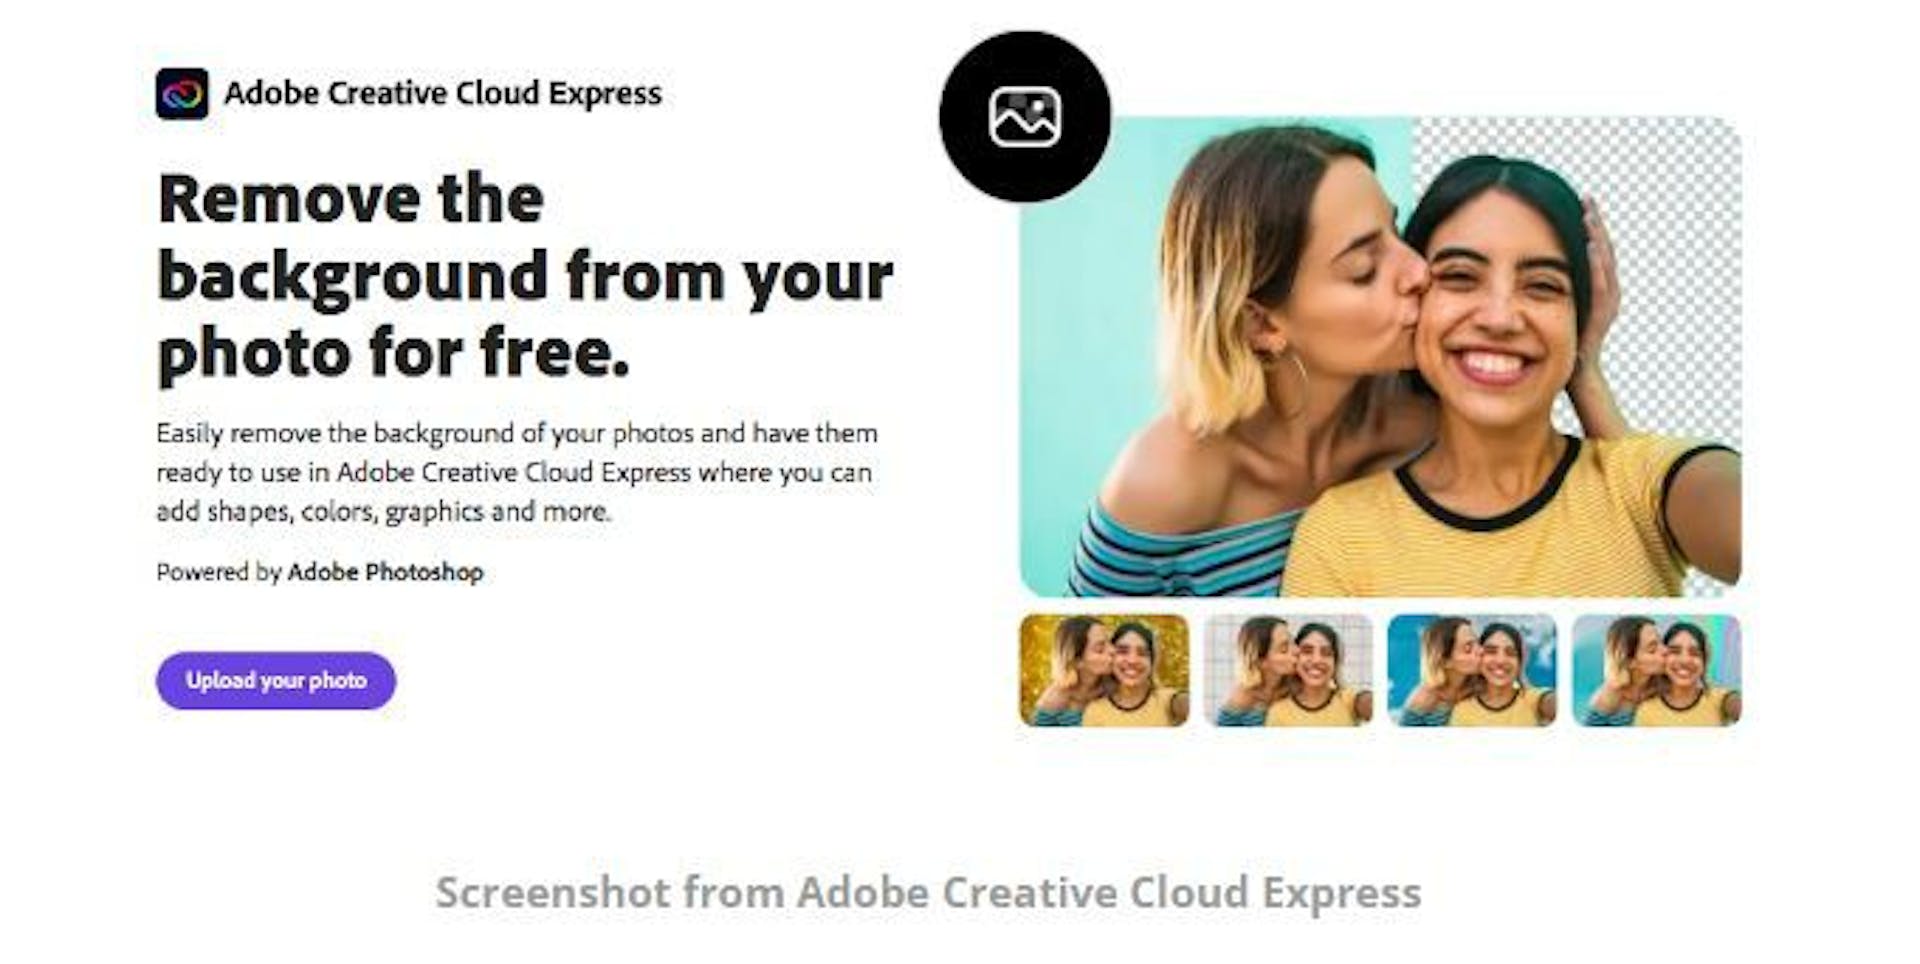 Estructuración clara en la página del producto Adobe Creative Cloud Express